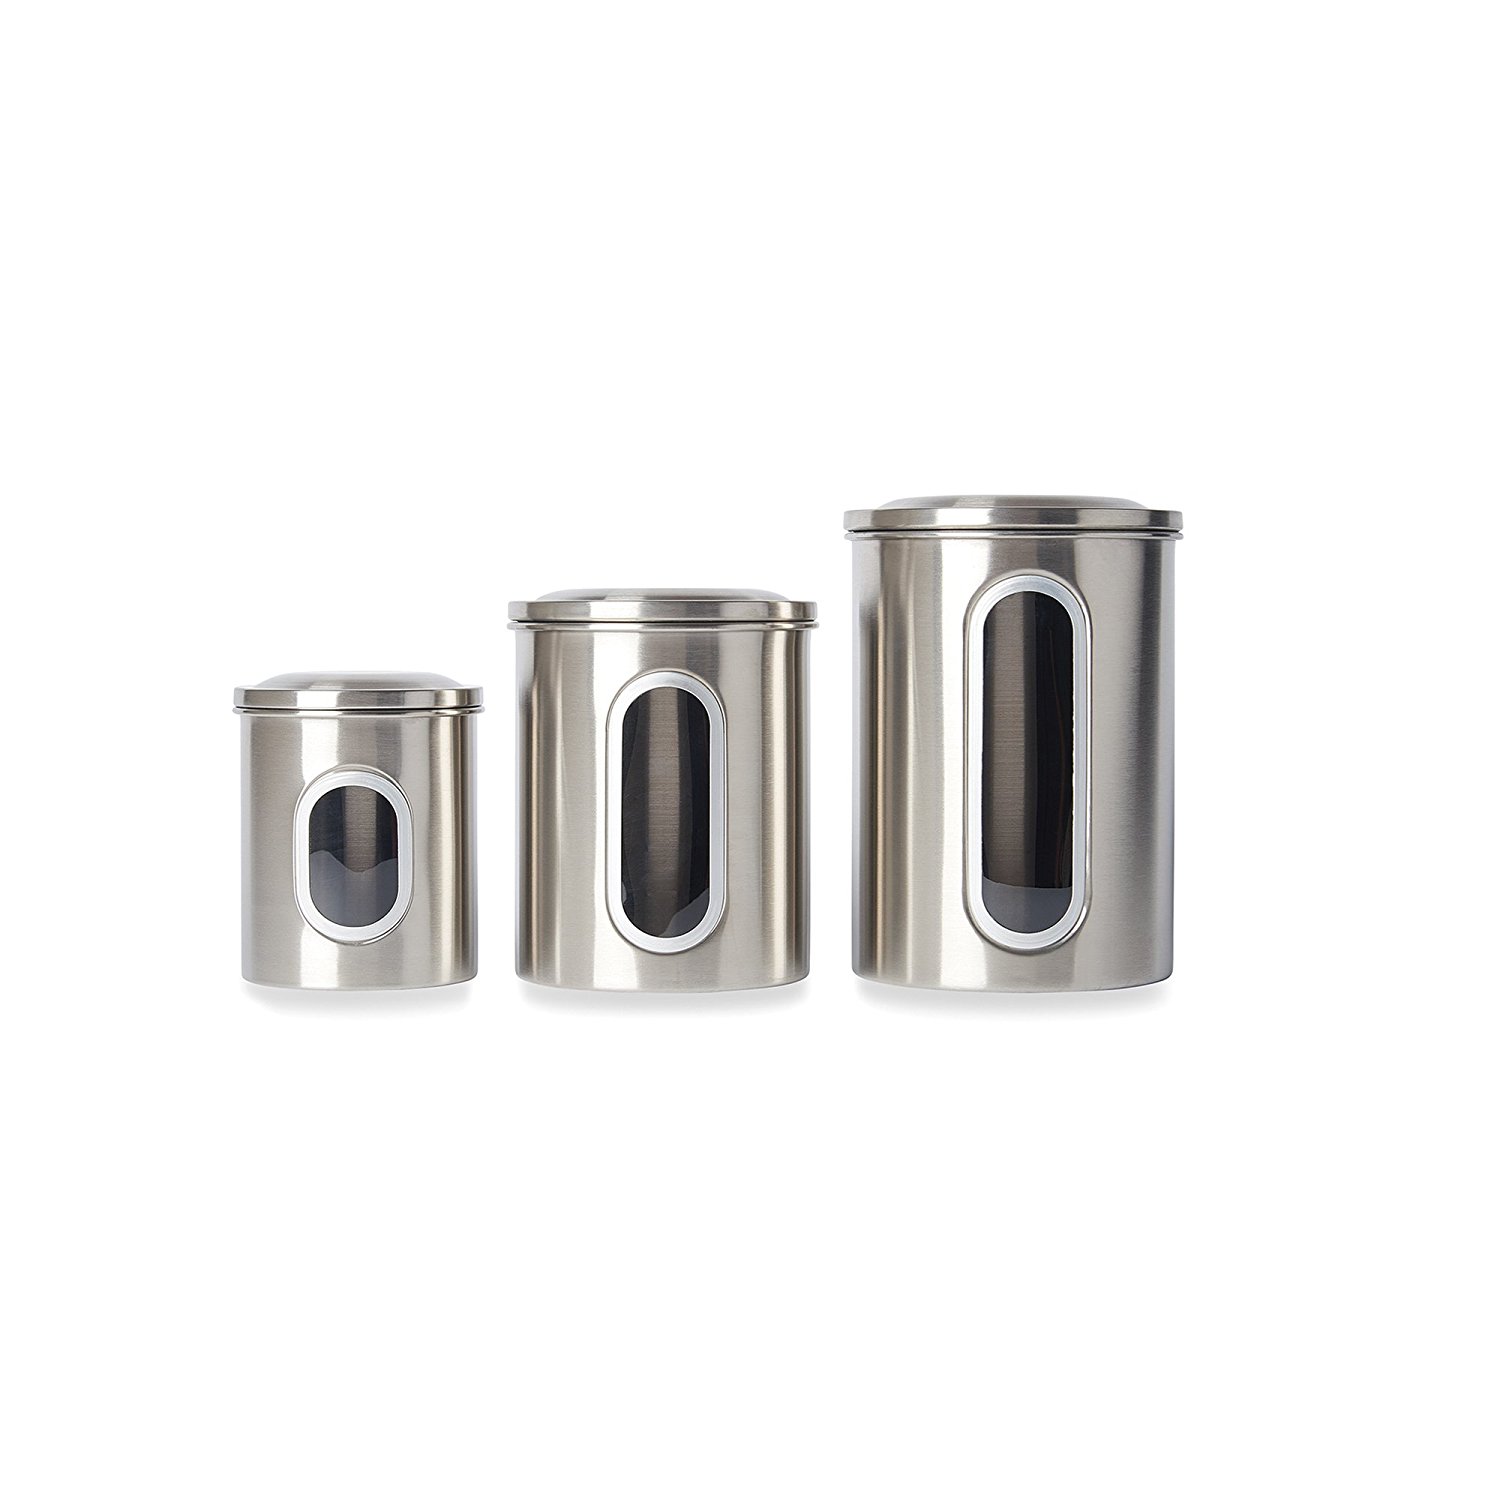 Hochwertige Edelstahl-Food Storage Kanister Set mit abnehmbaren luftdichten Deckel